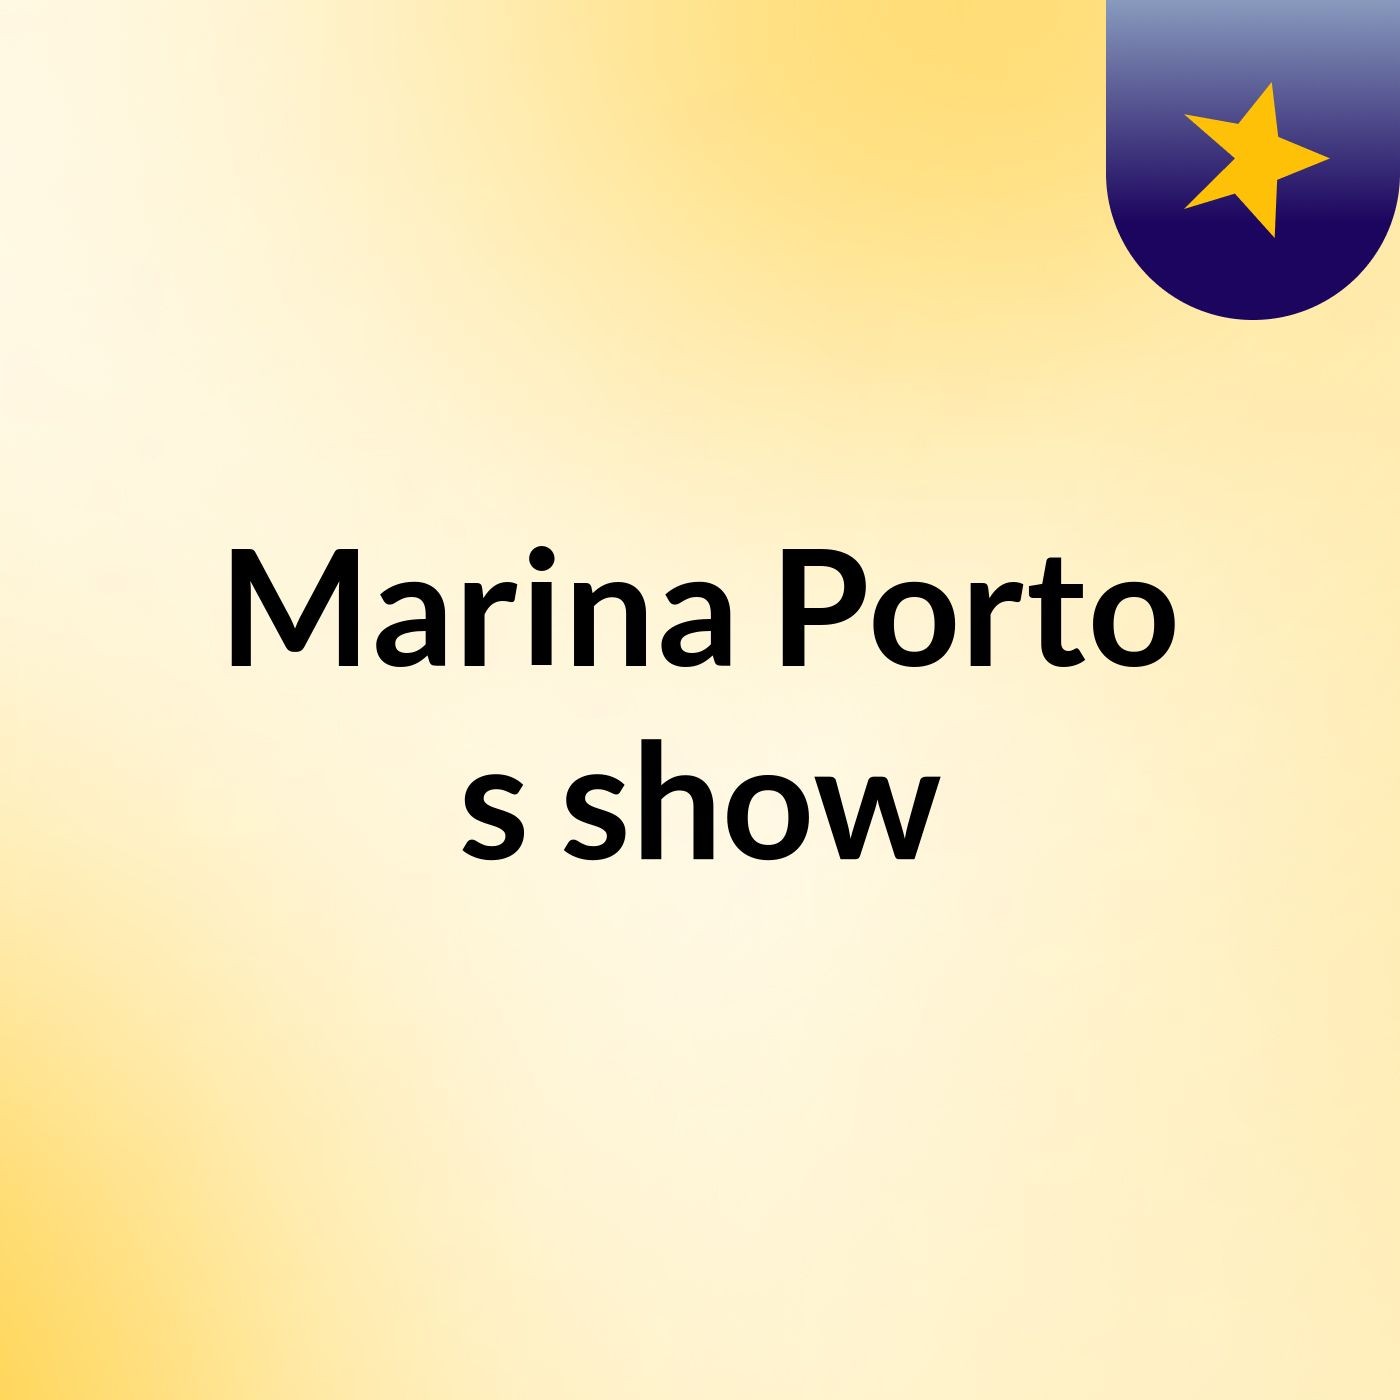 Marina Porto's show